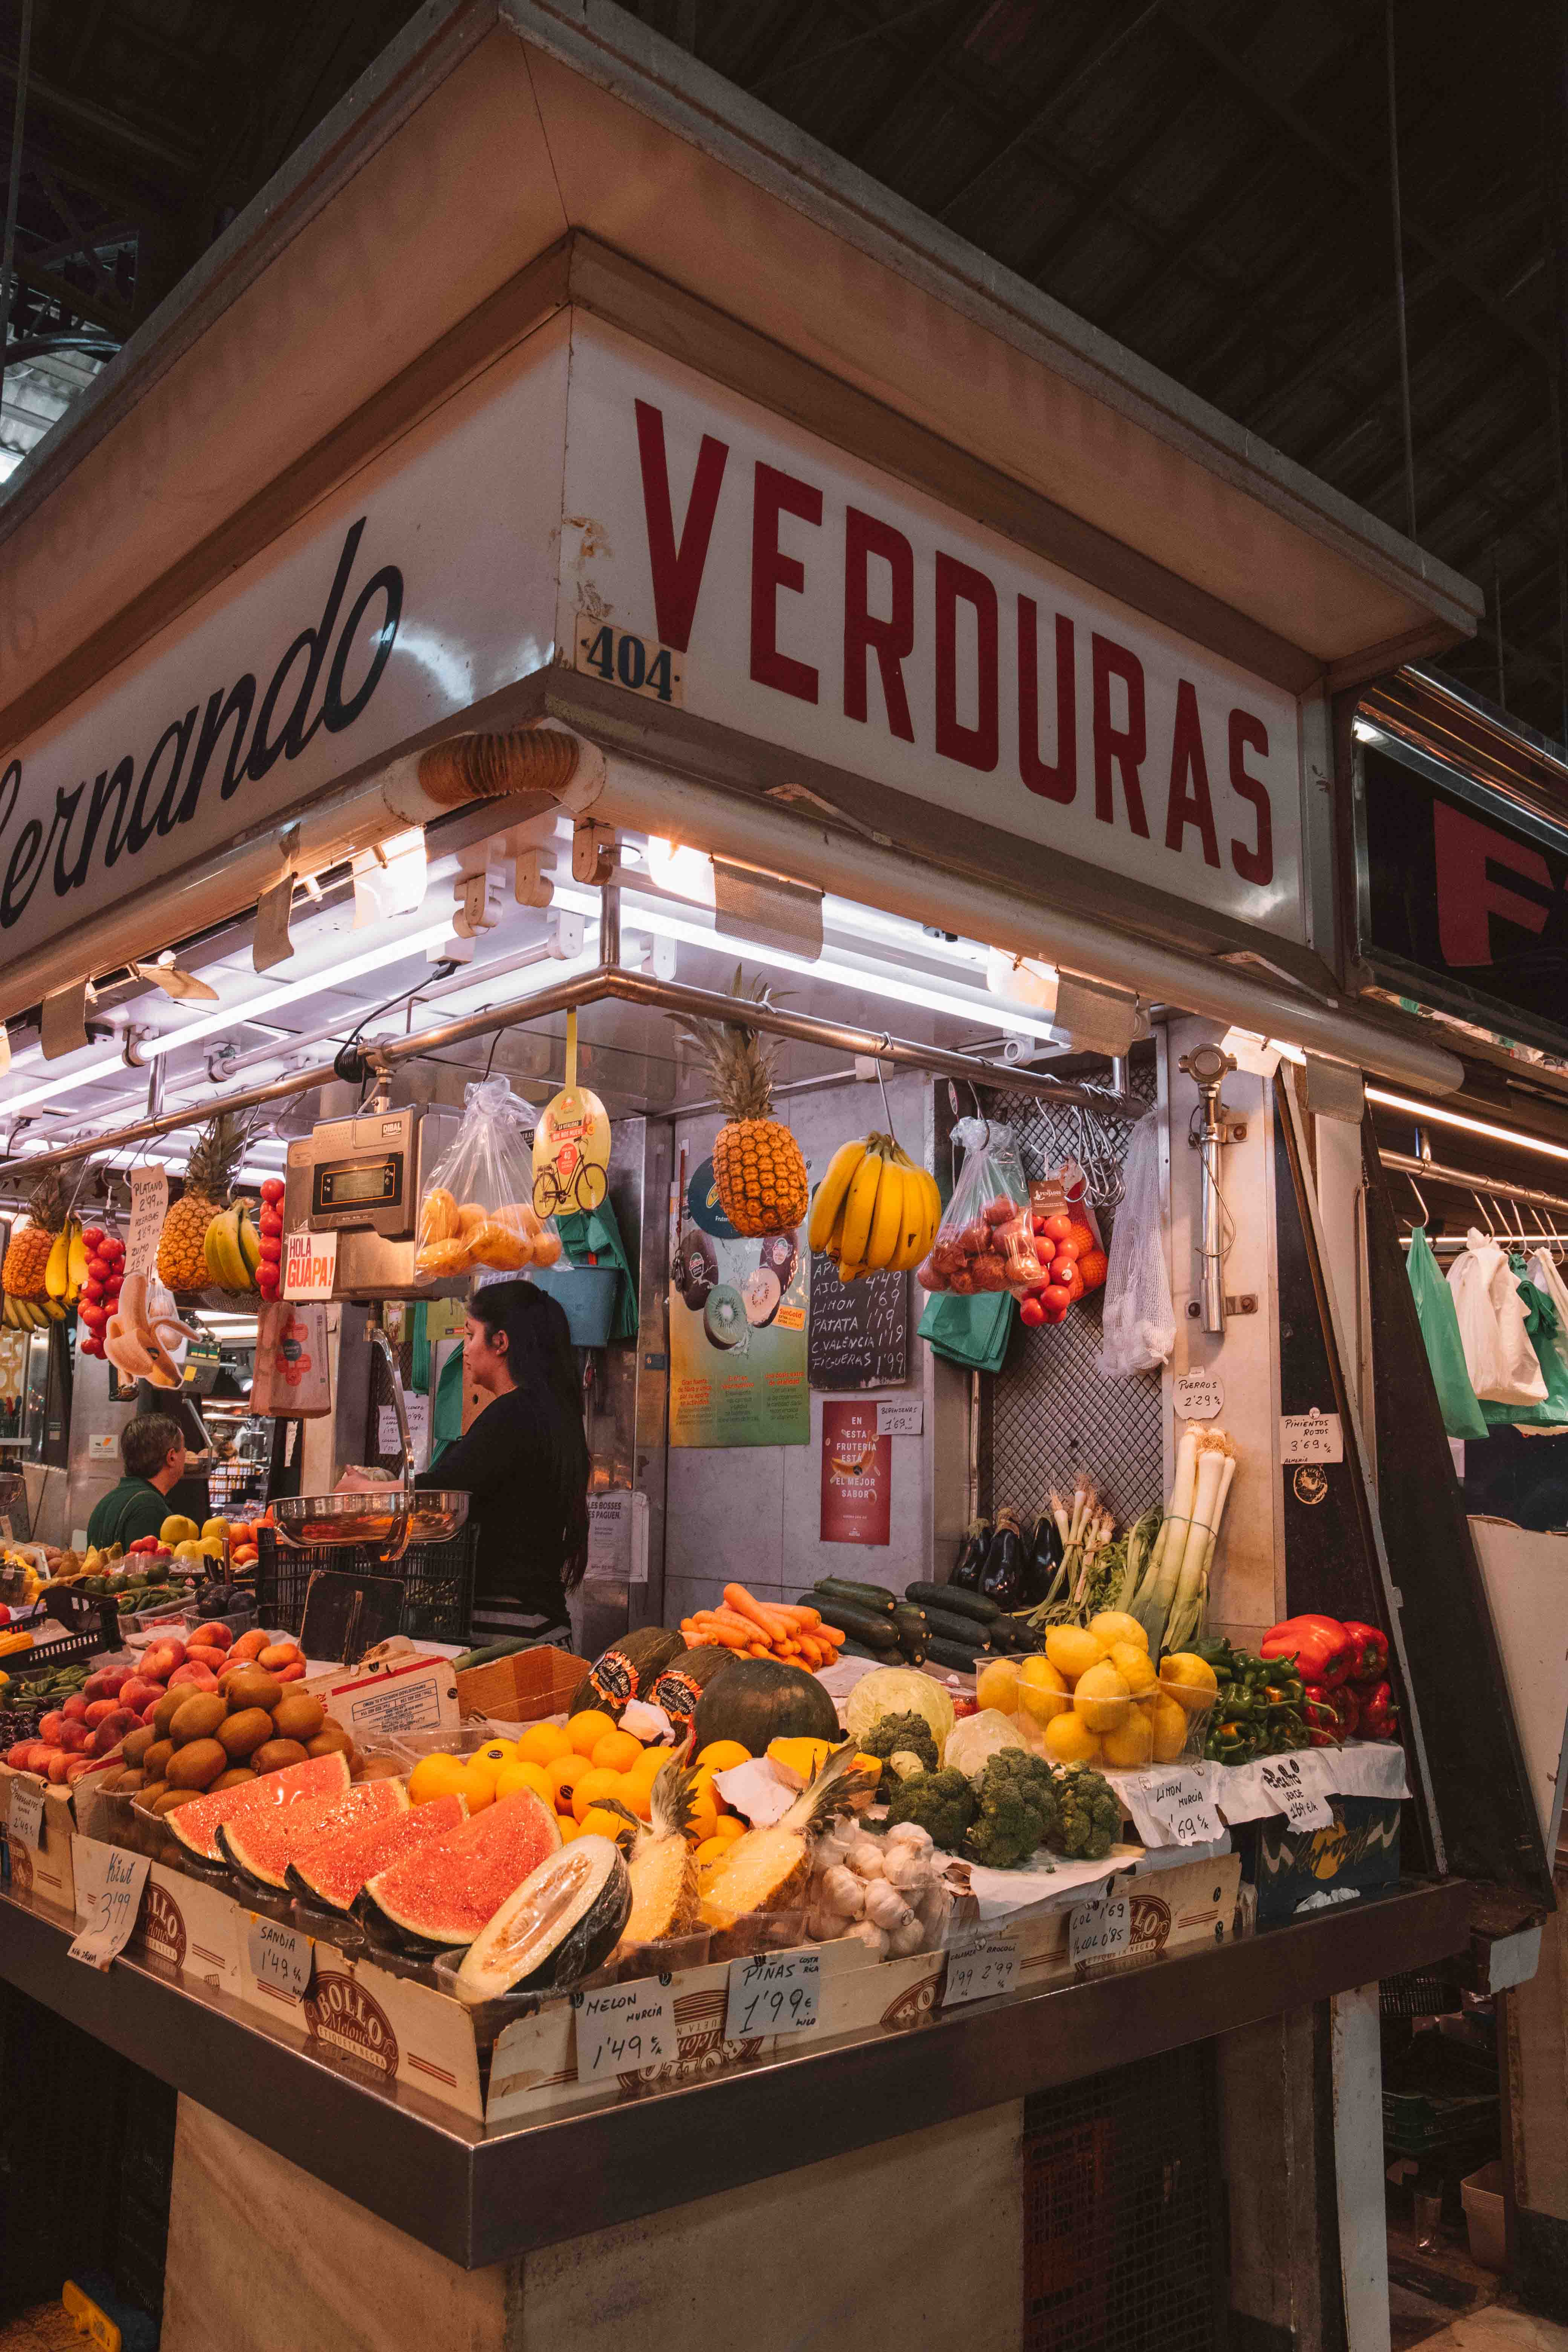 Verdigas fruit stand in Mercado de la Boqueria